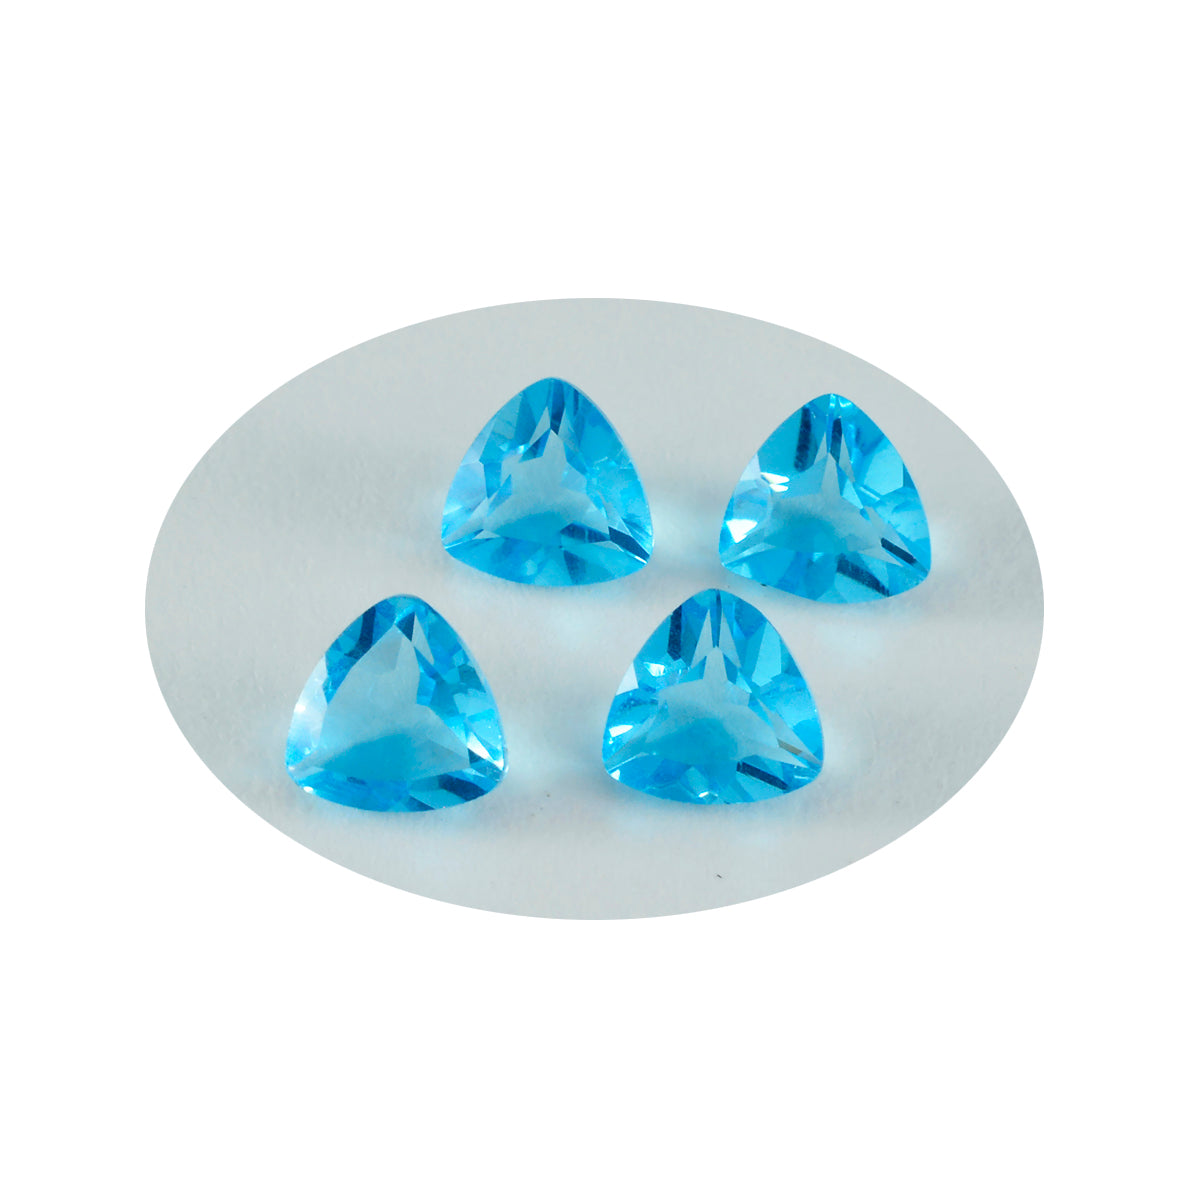 Riyogems 1 pieza de topacio azul CZ facetado 10x10 mm forma de trillón gemas de calidad impresionante